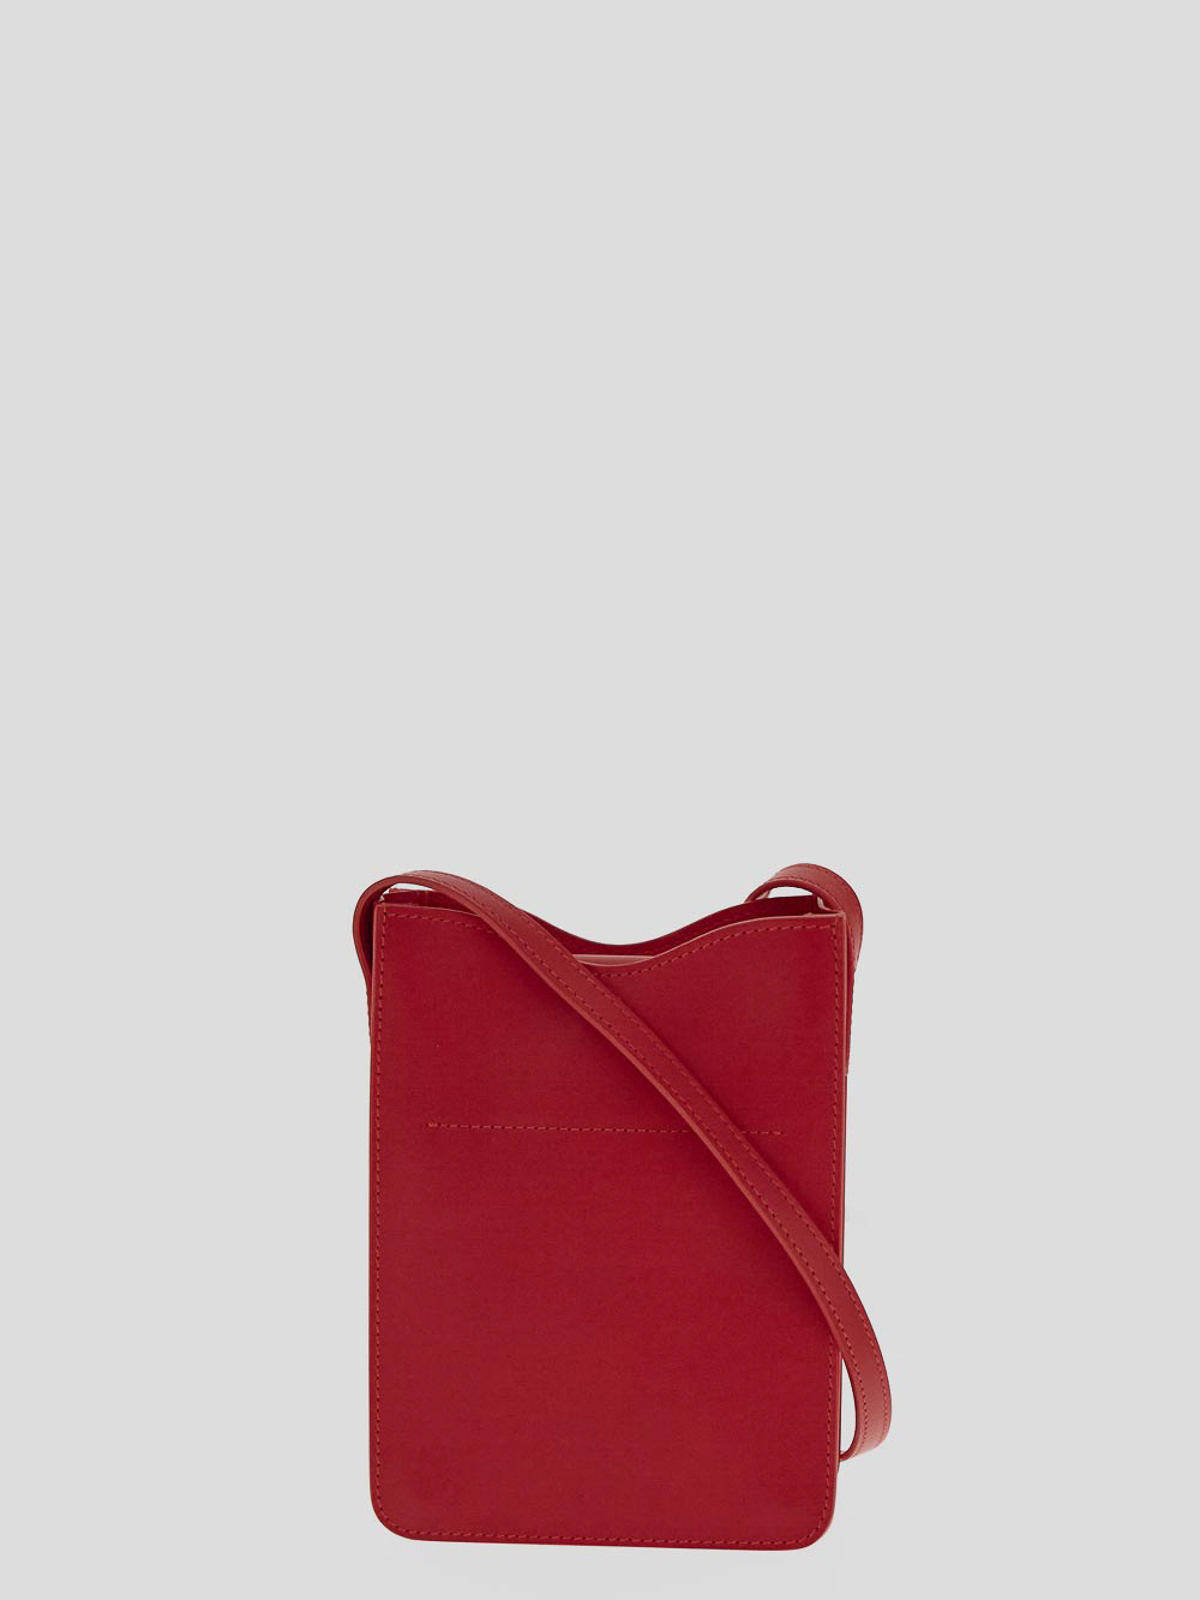 Shop Il Bisonte Isabel Marant Brown Bag In Red